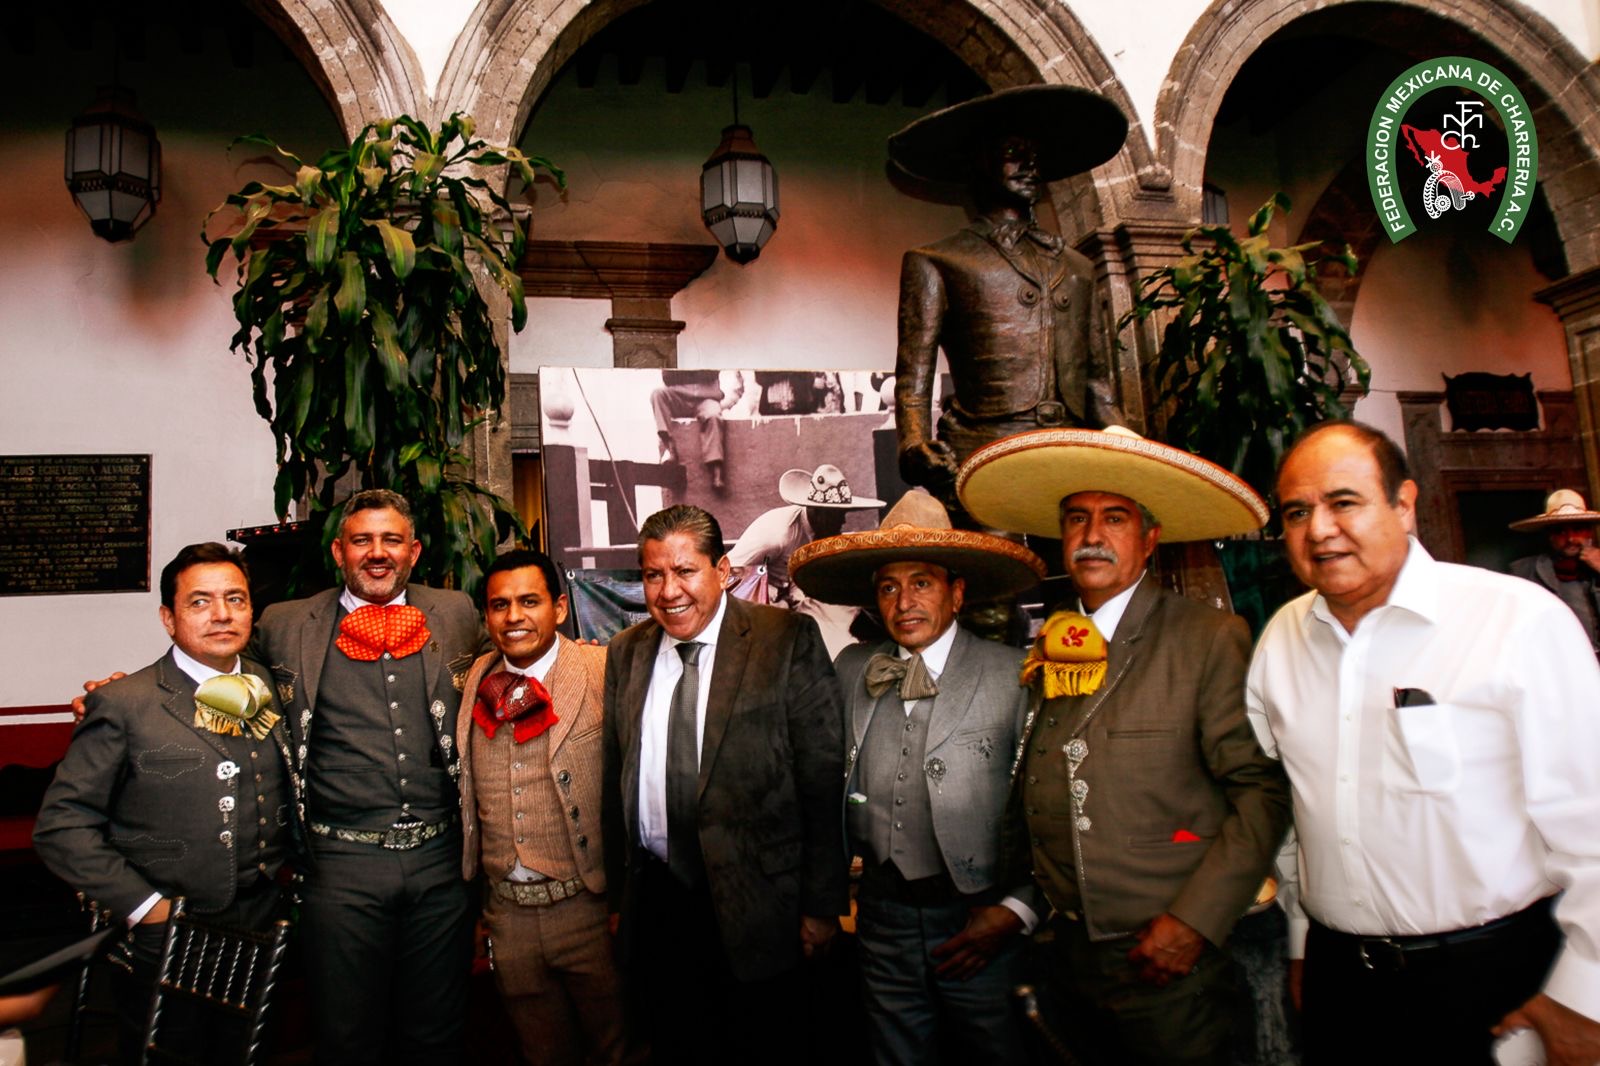 El Gobernador de Zacatecas David Monreal estuvo en la sede nacional de la Charrería y prometió mucha seguridad en su estado.